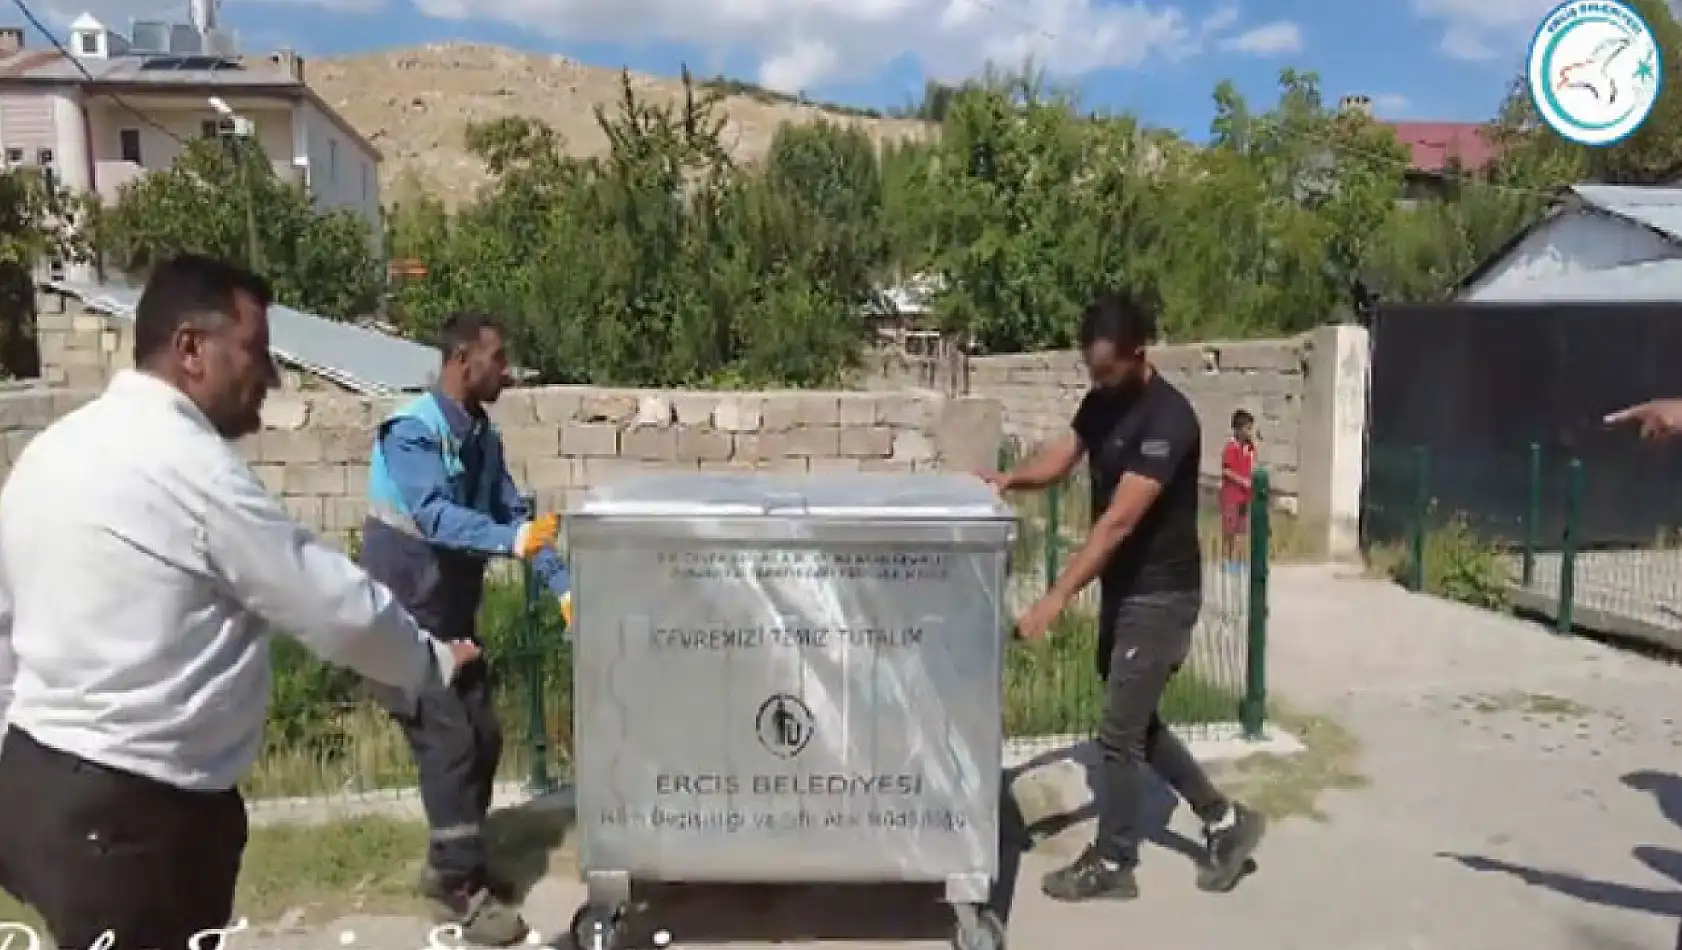 Erciş Belediyesi'nden mahallelere yeni çöp konteynırı